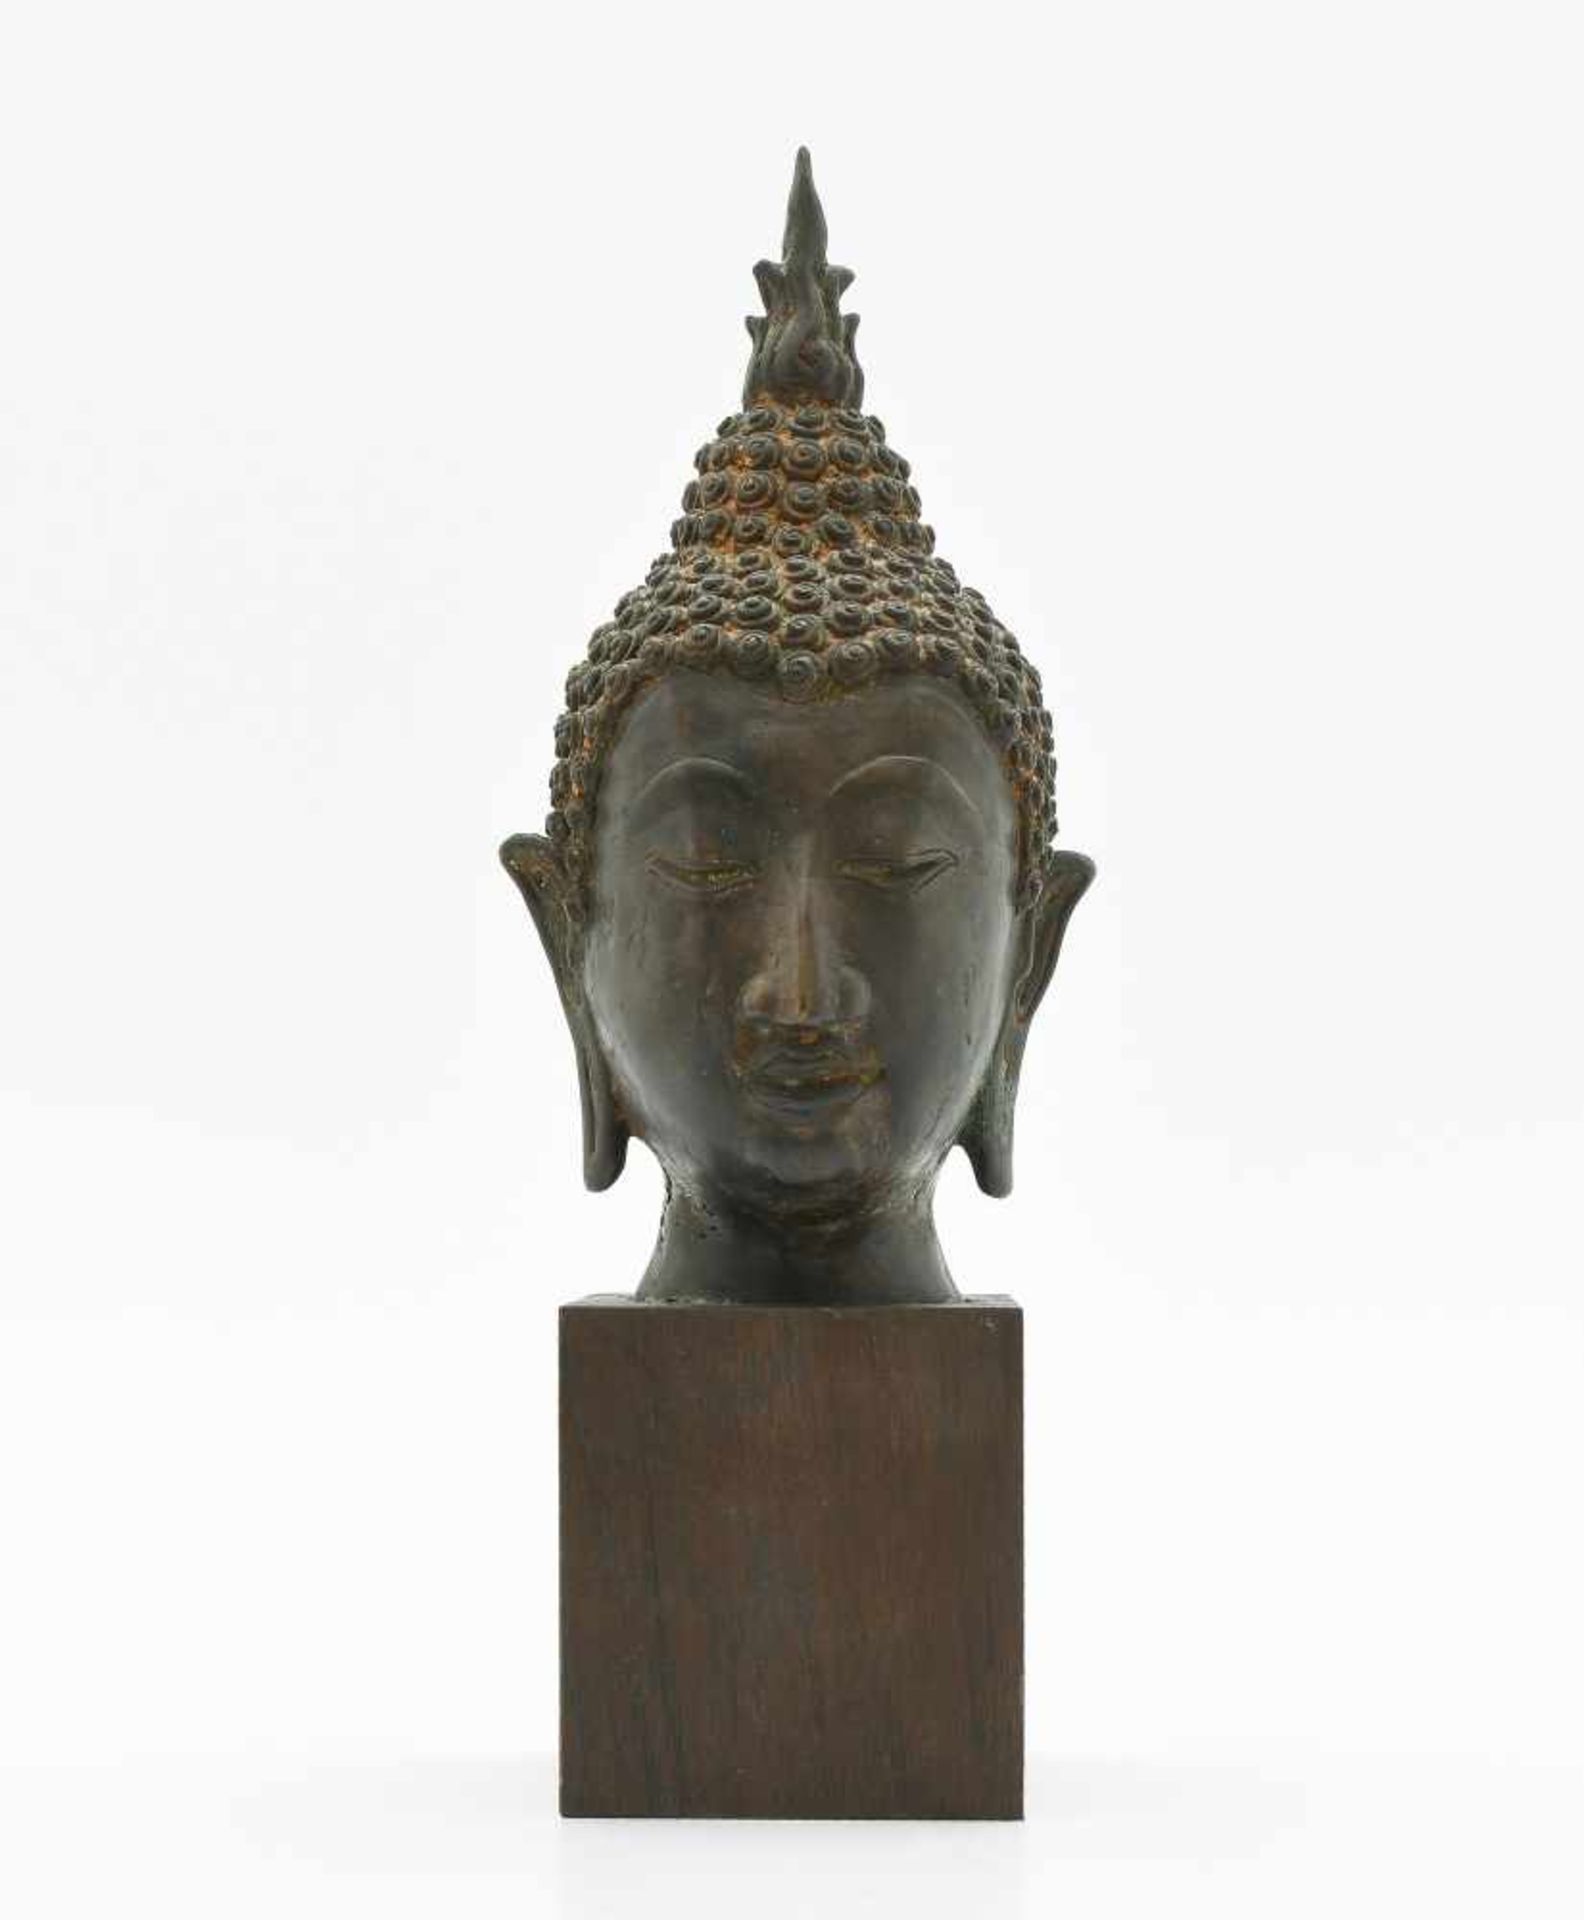 BuddhakopfThailand, Ayutthaya Stil. Bronze. Buddhakopf mit hoher Ketumala. H 25 cm (ohne